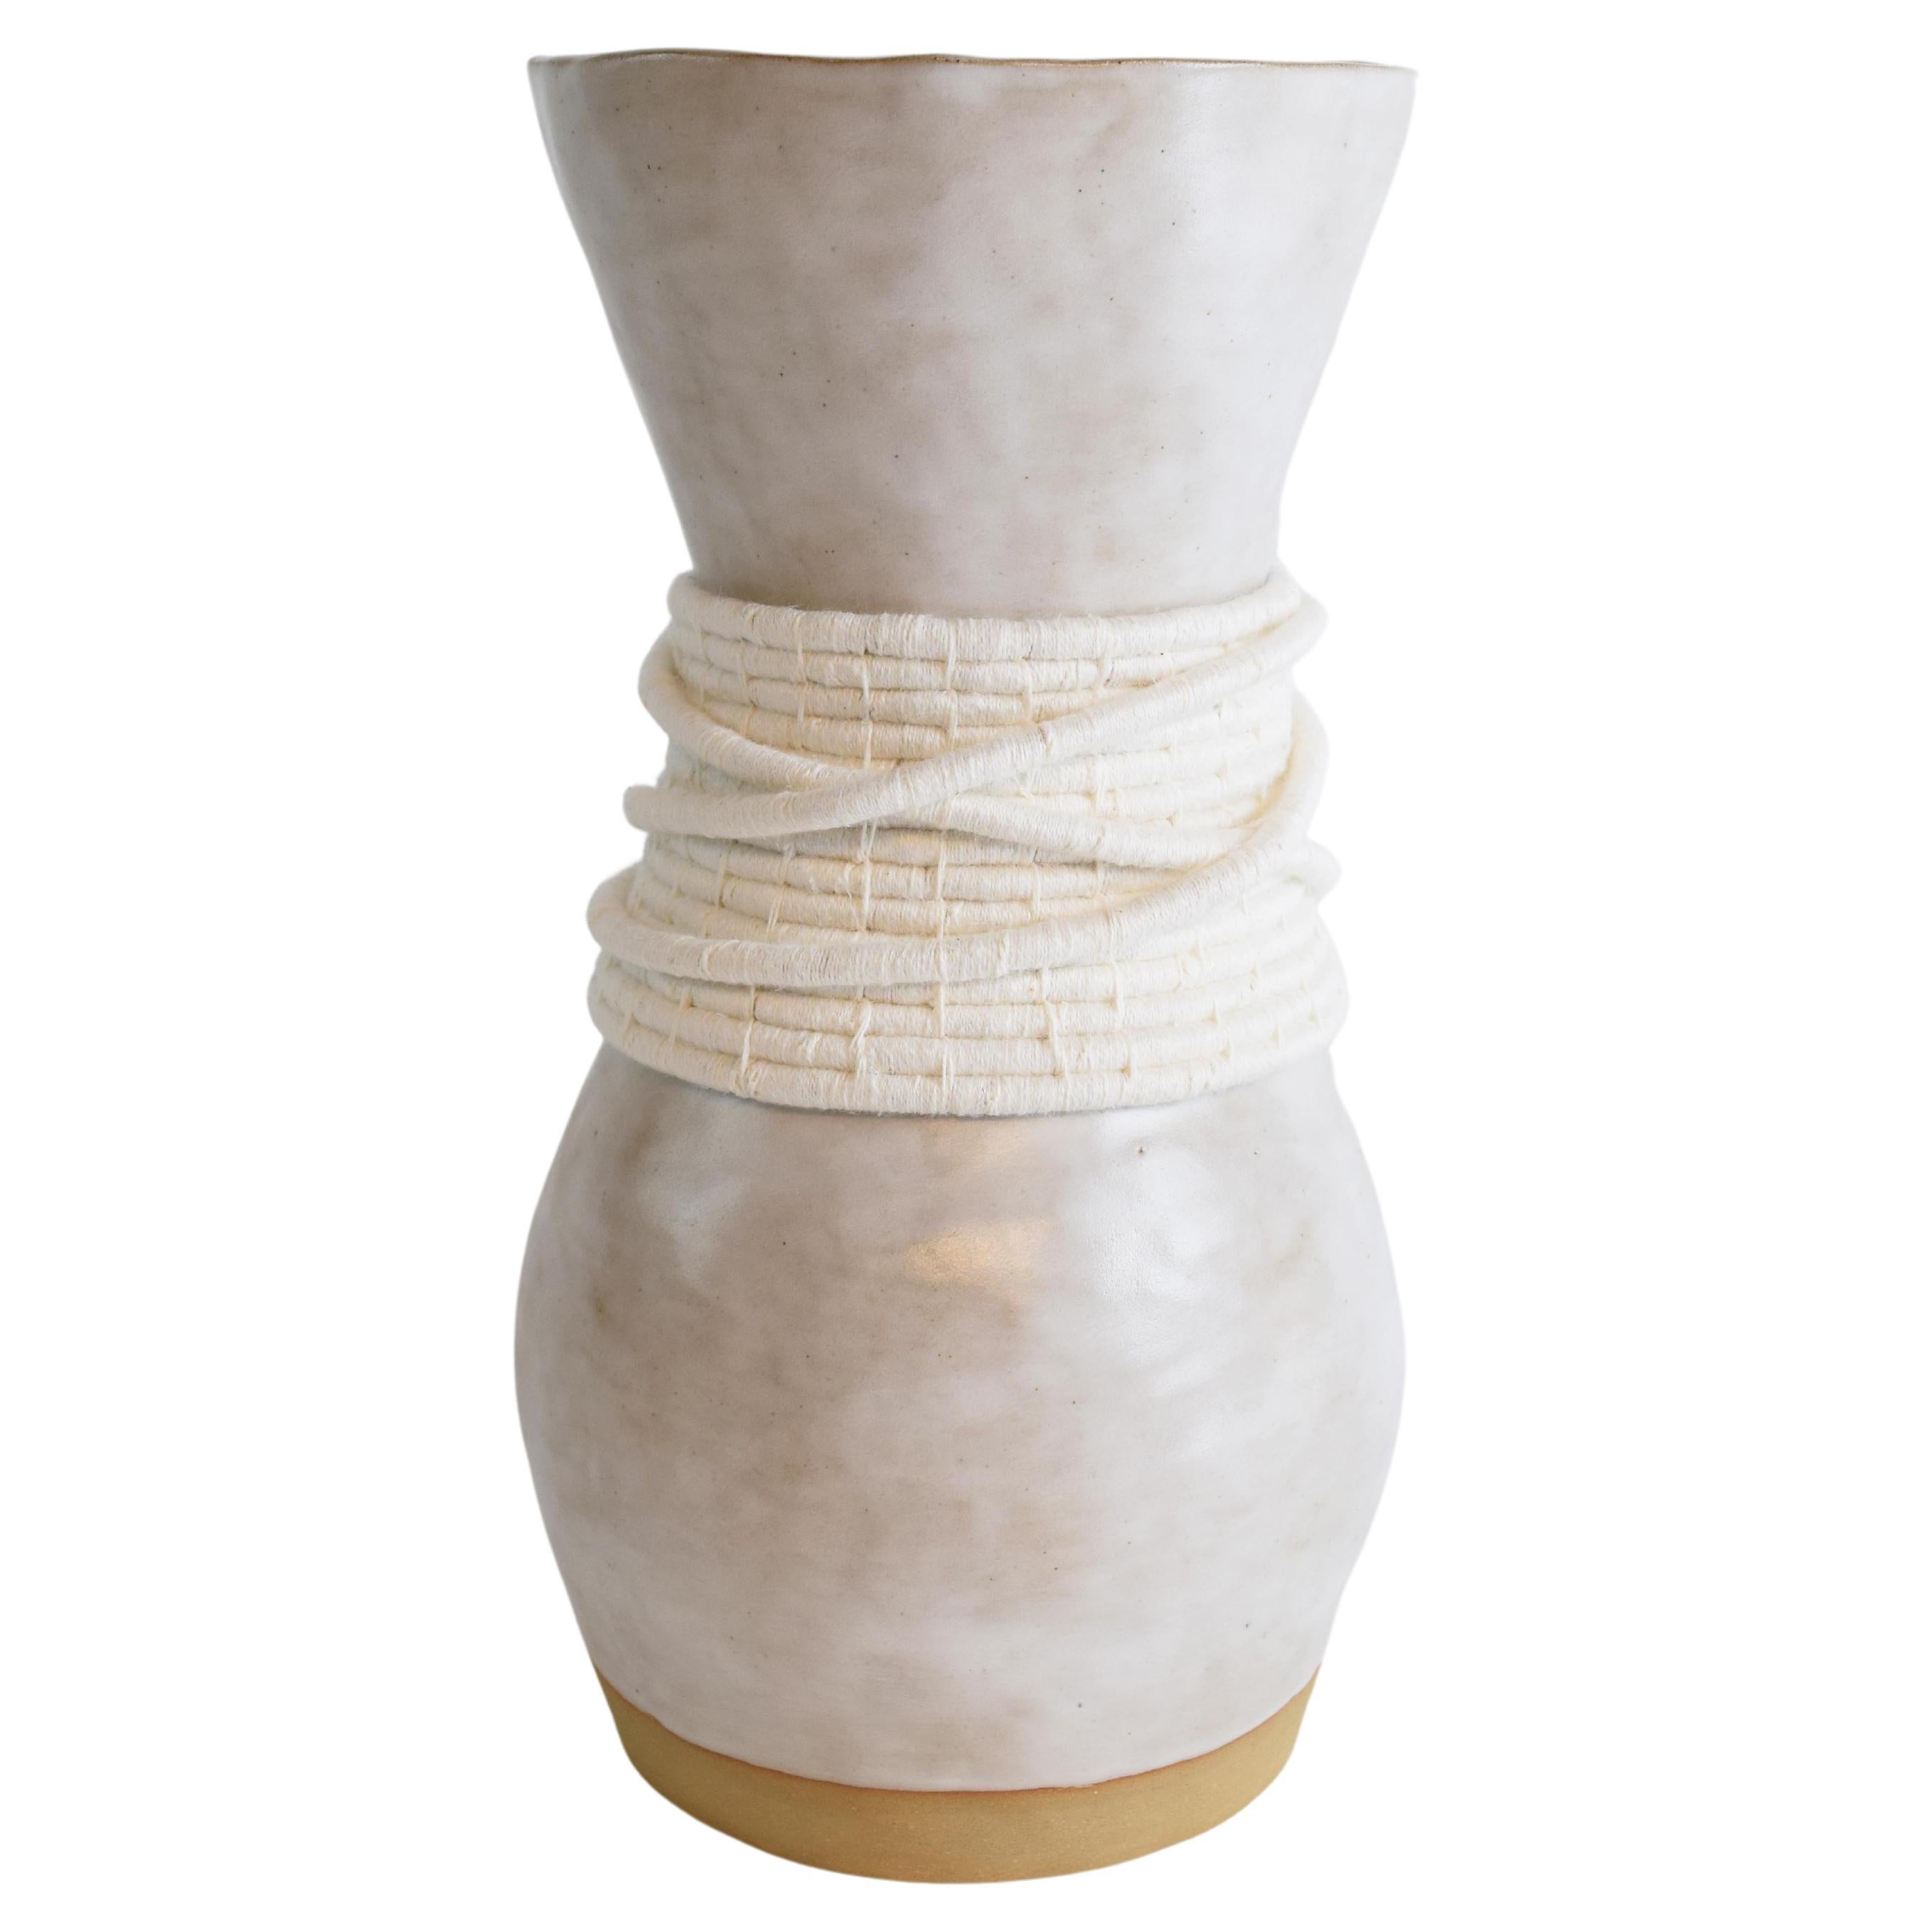 Vase unique en son genre en céramique et fibres n° 809  - glaçure blanche avec coton blanc tissé en vente